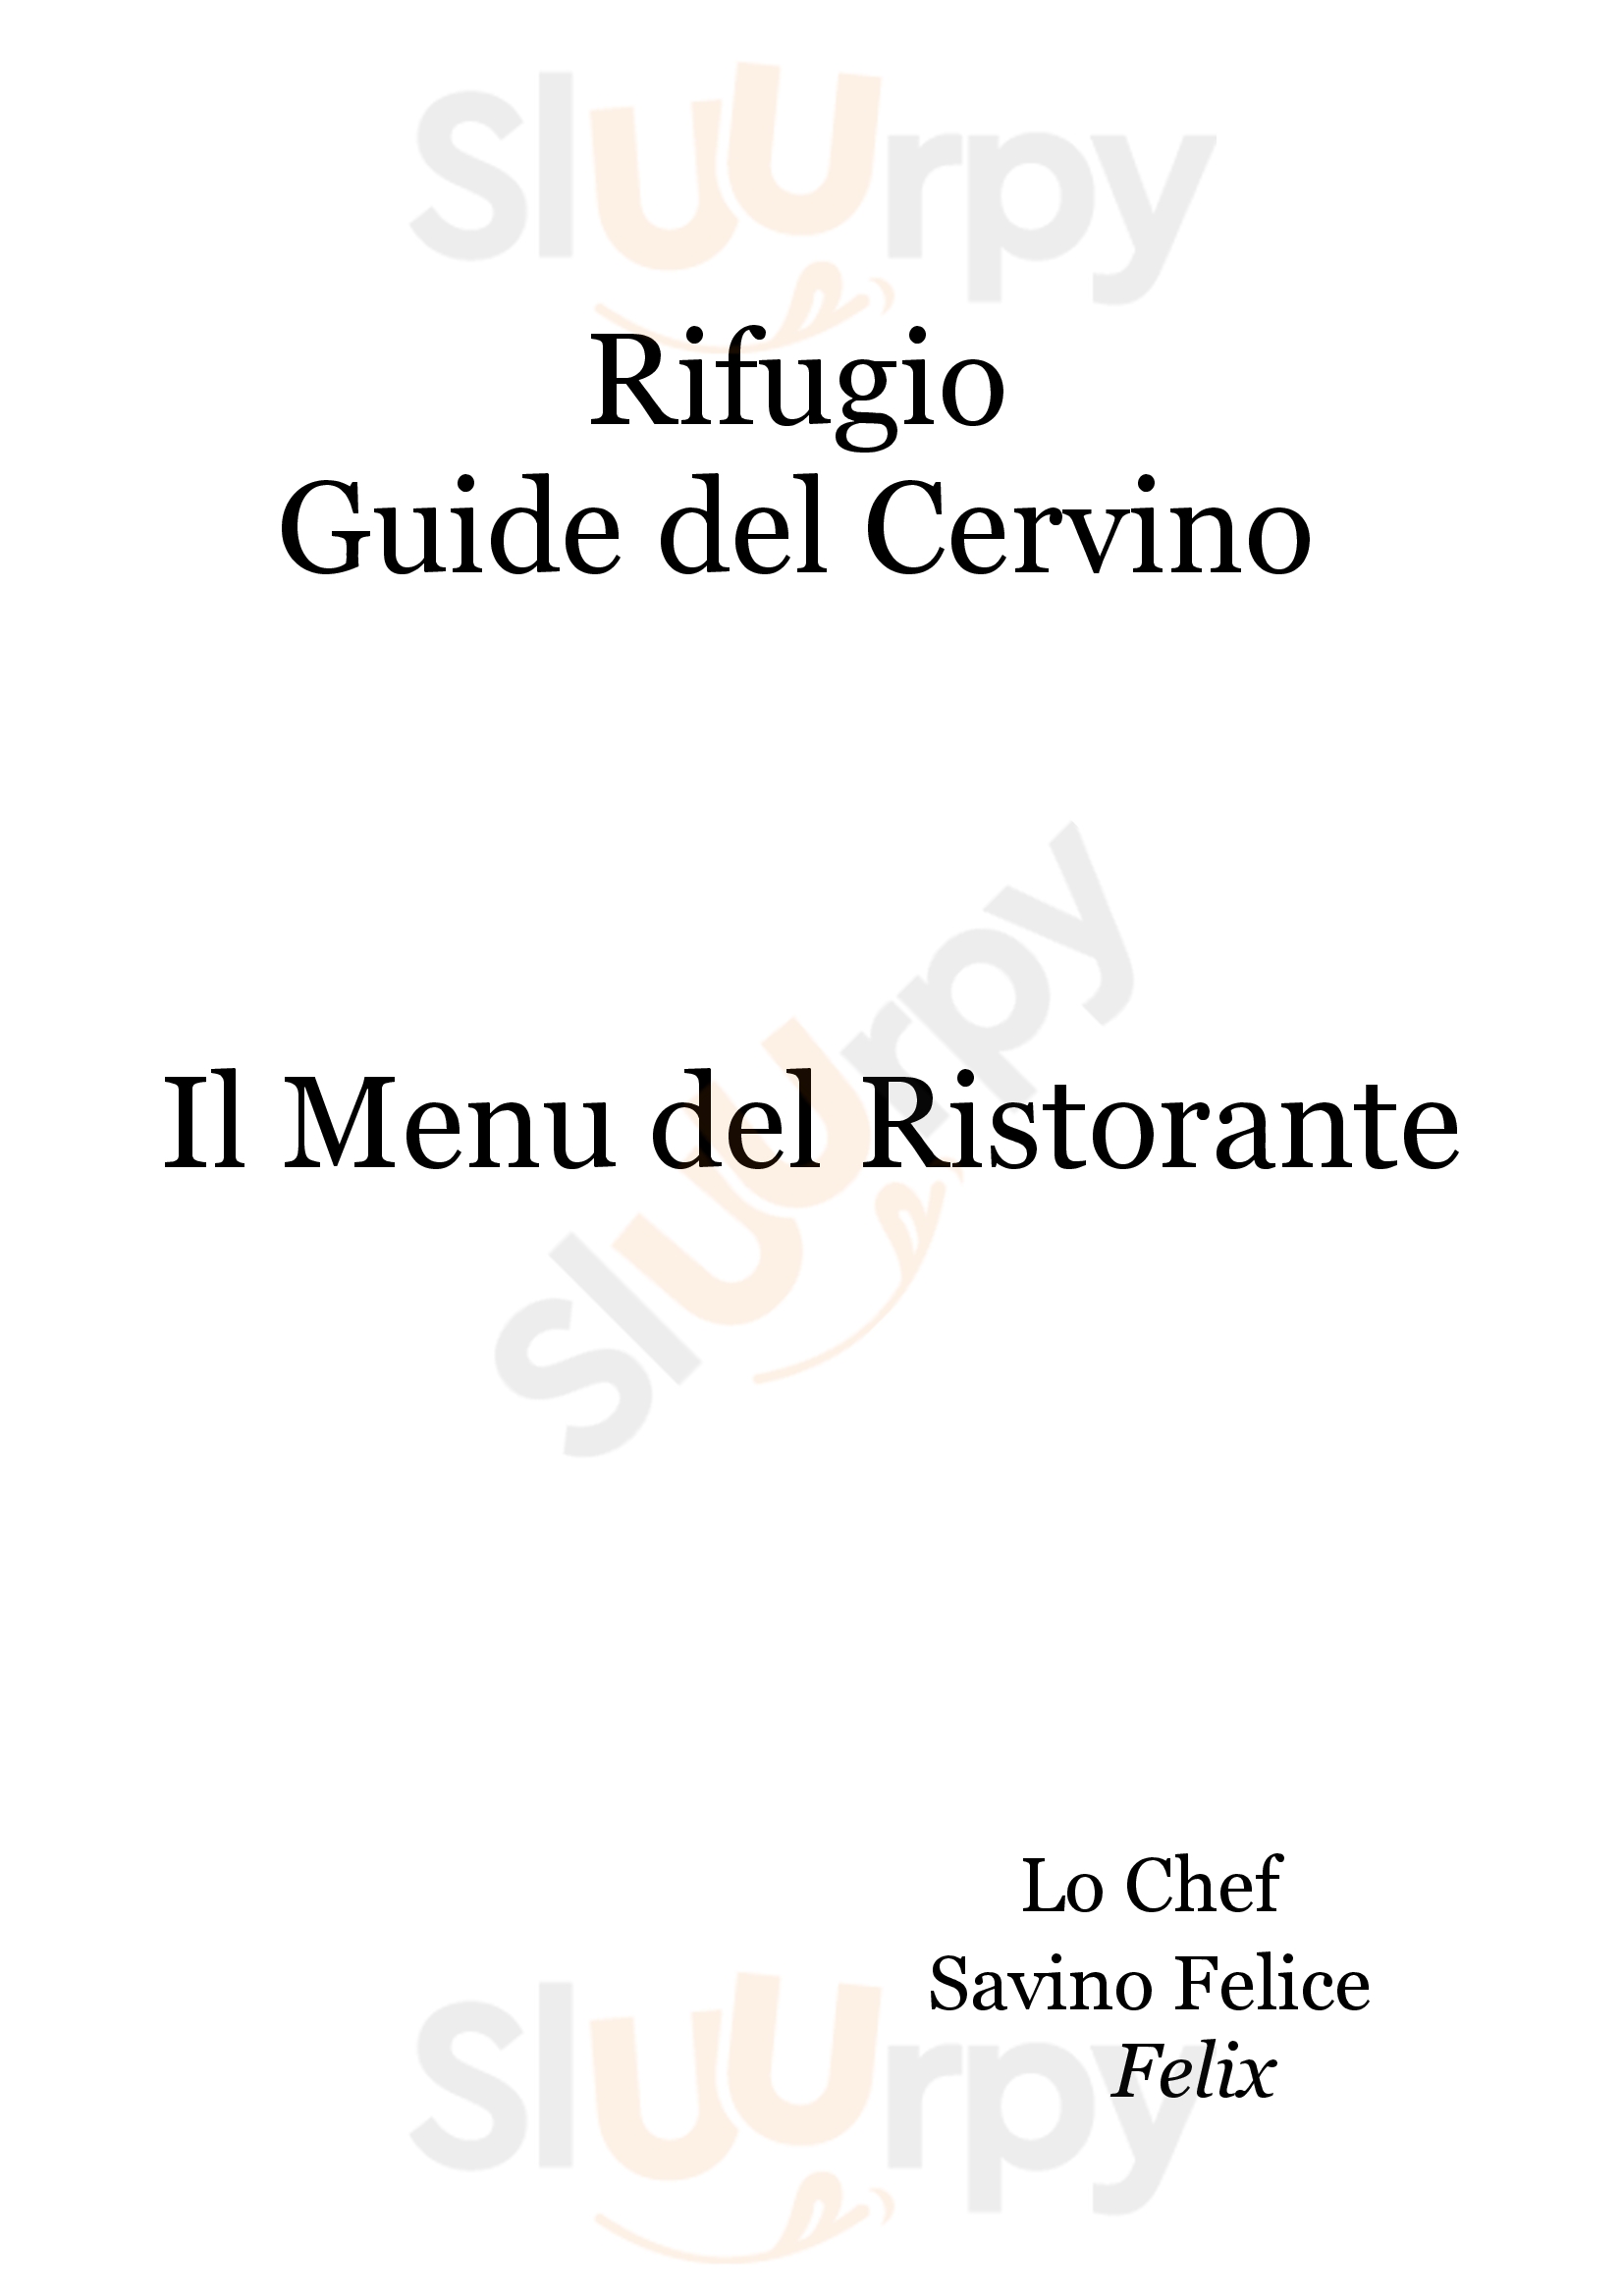 Rifugio Guide del Cervino Valtournenche menù 1 pagina